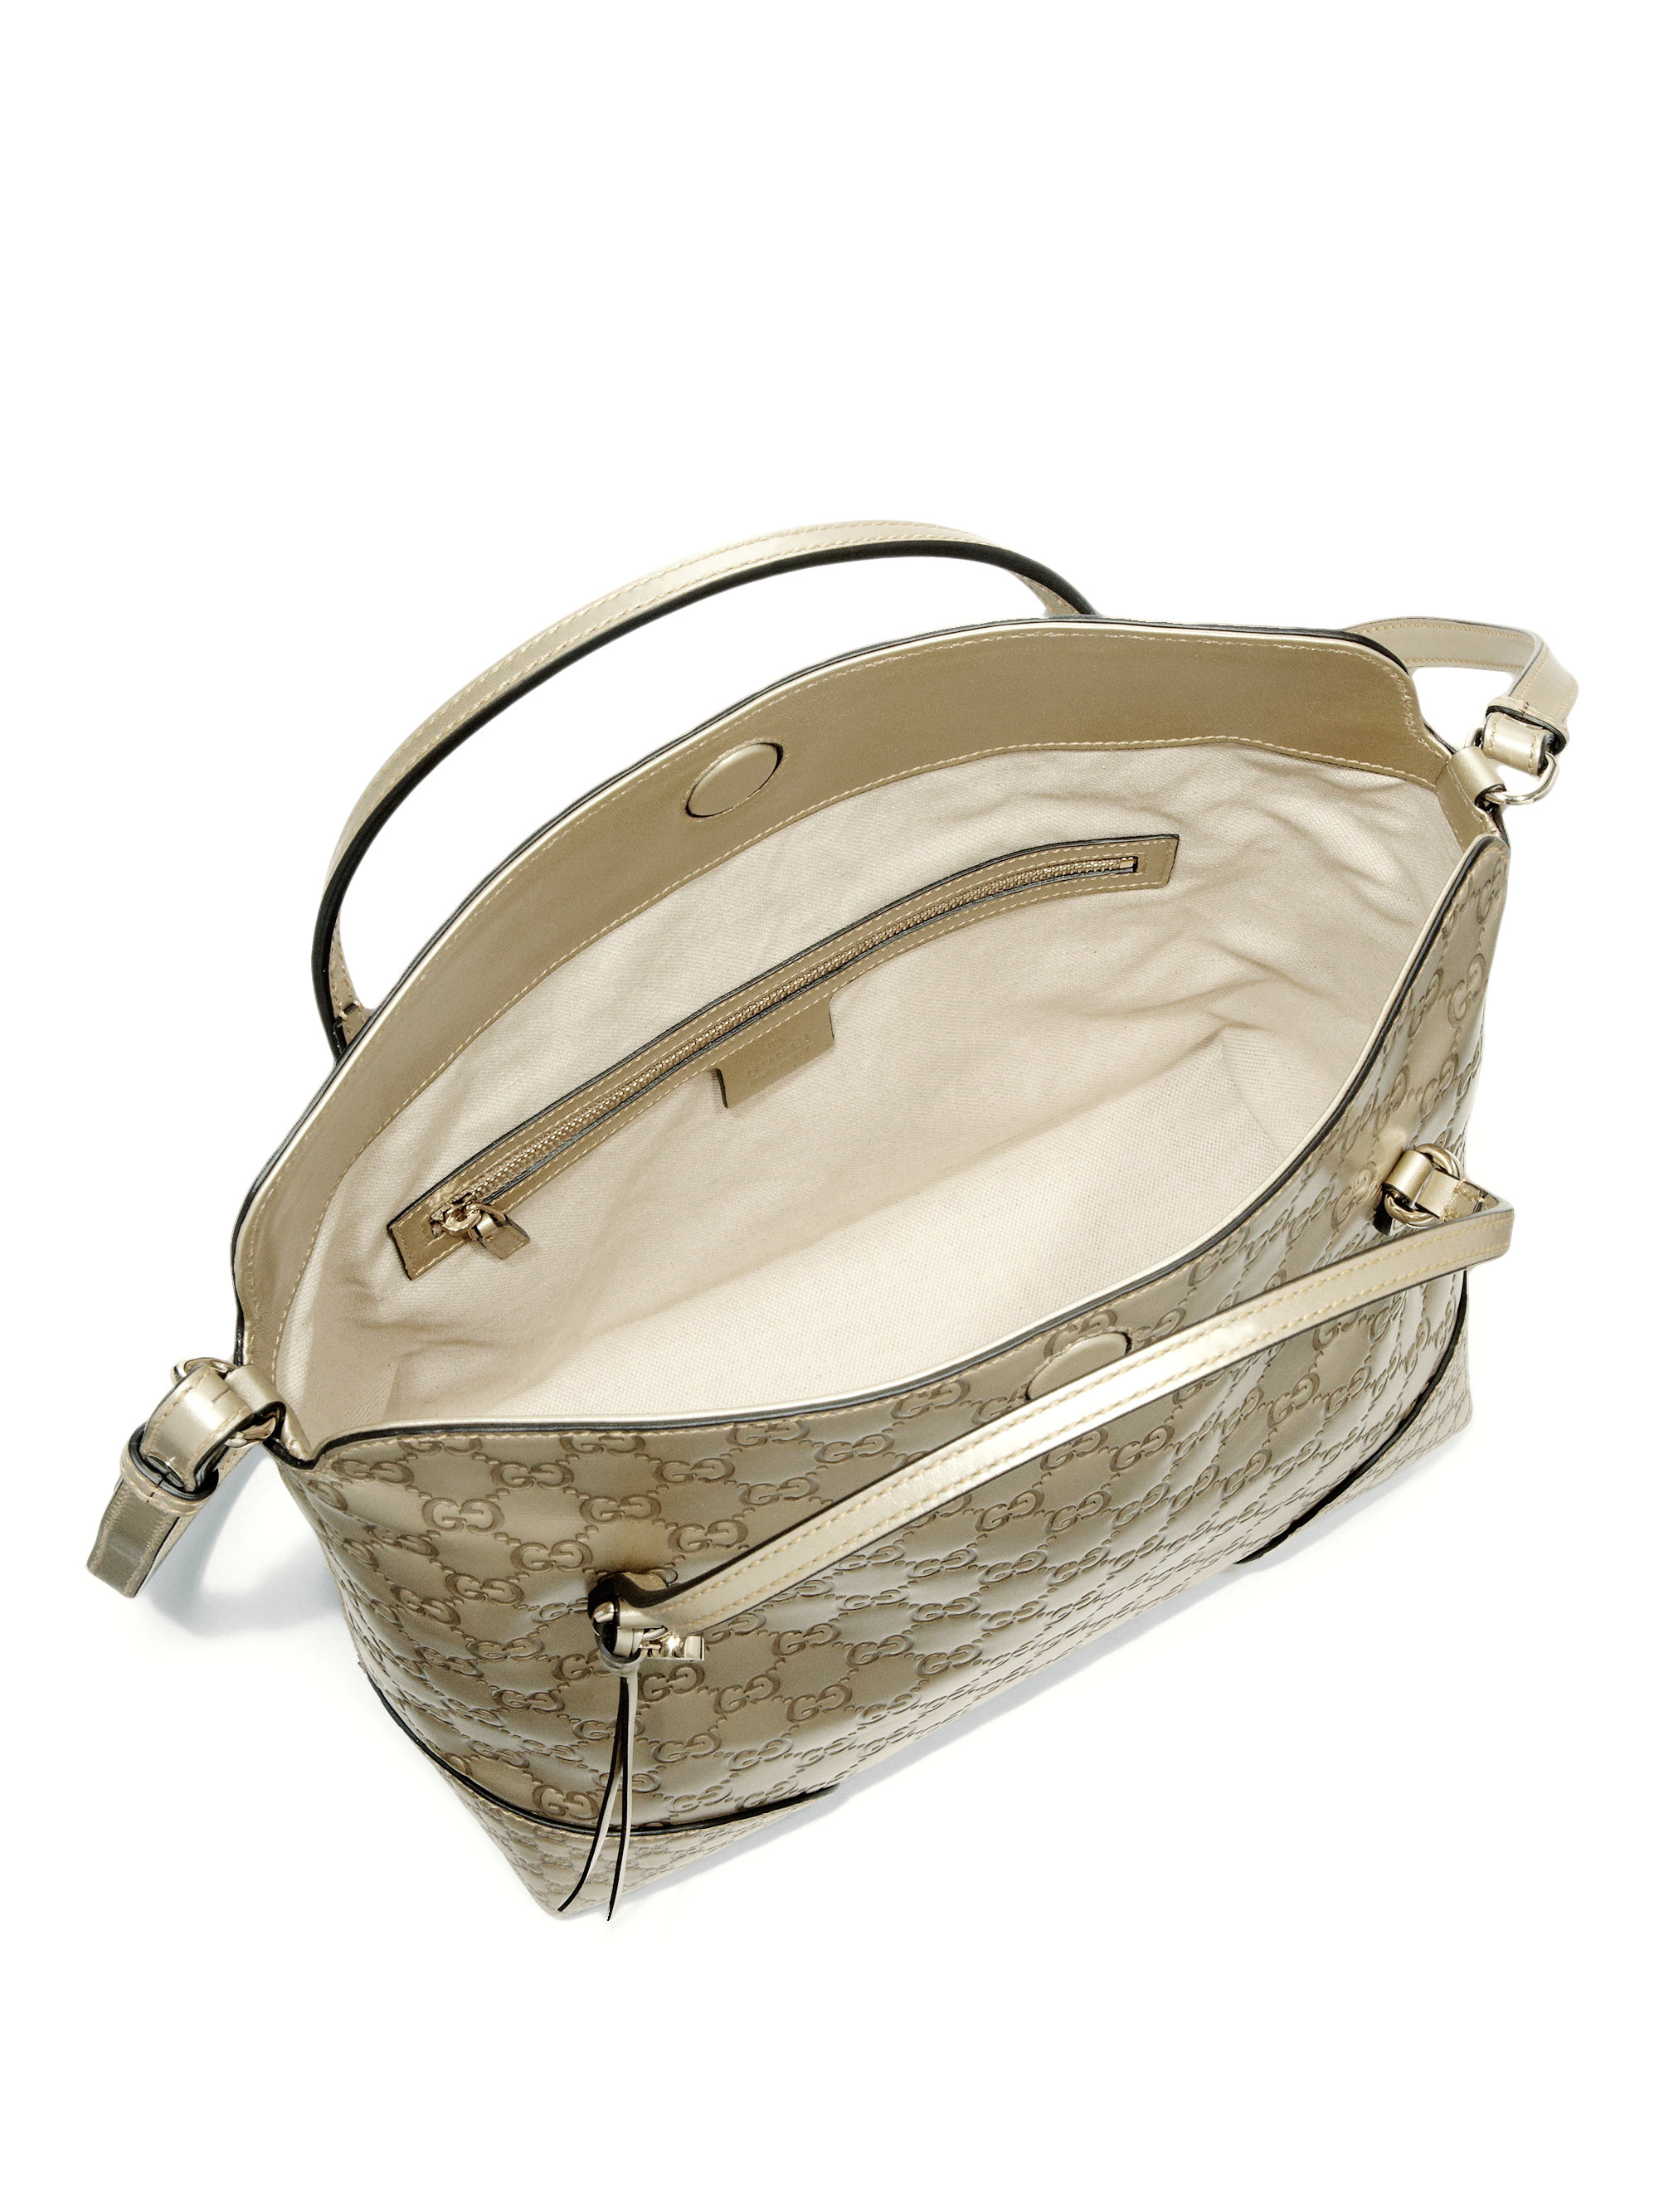 Gucci Bree Metallic Ssima Leather Top Handle Bag in Metallic | Lyst